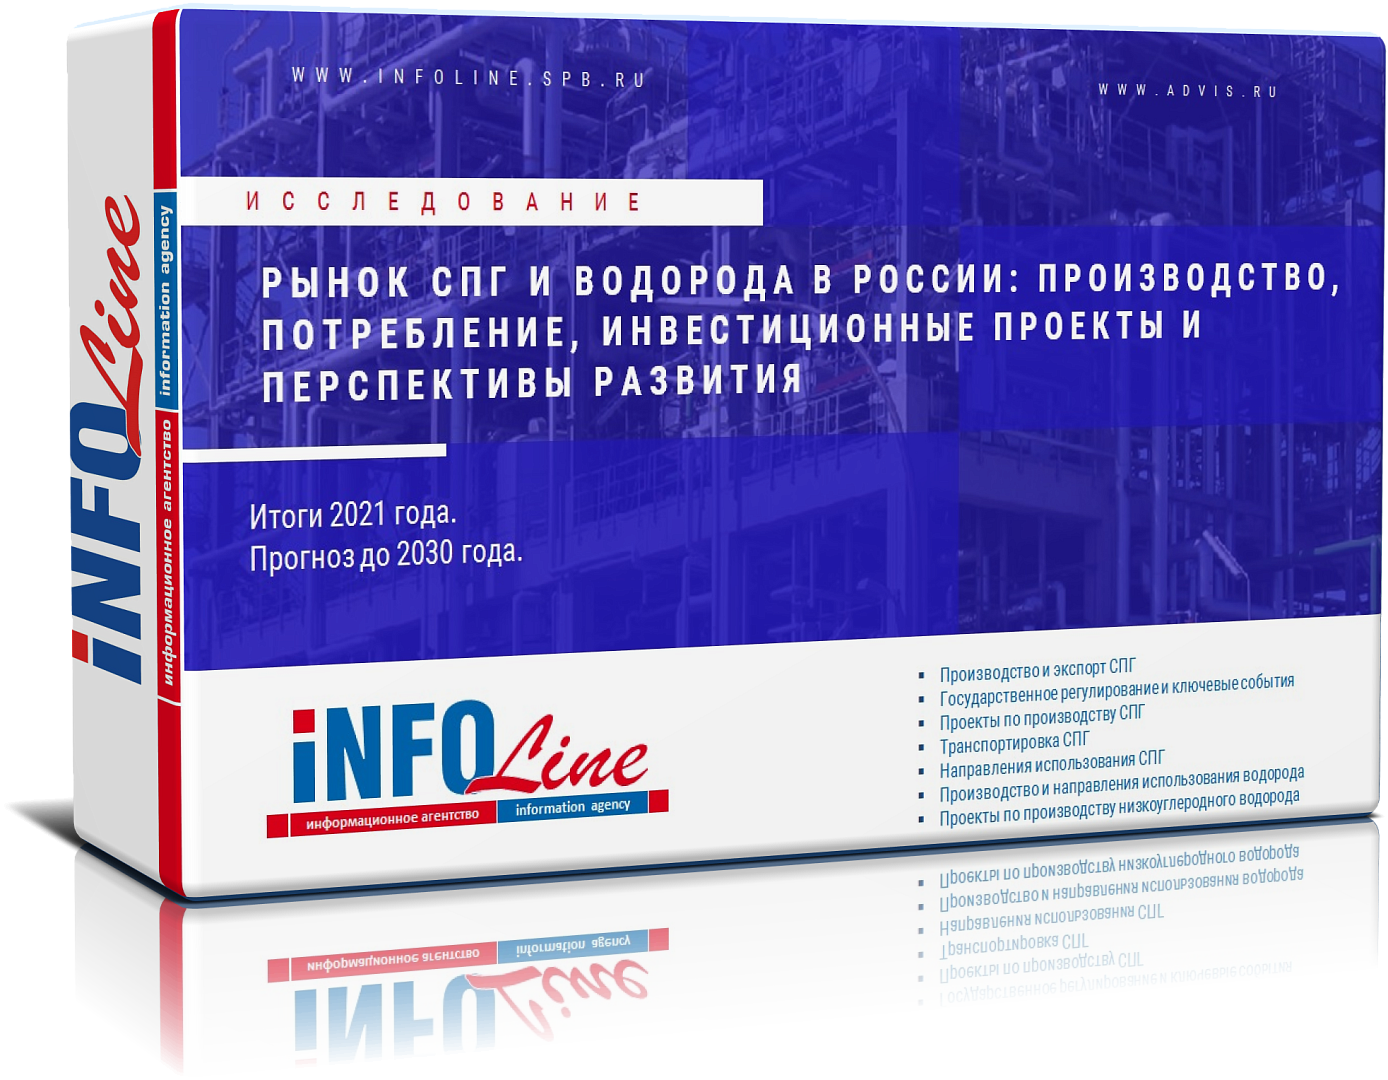 Исследование "Рынок СПГ и водорода в РФ: производство, потребление, инвестиционные проекты и перспективы развития"